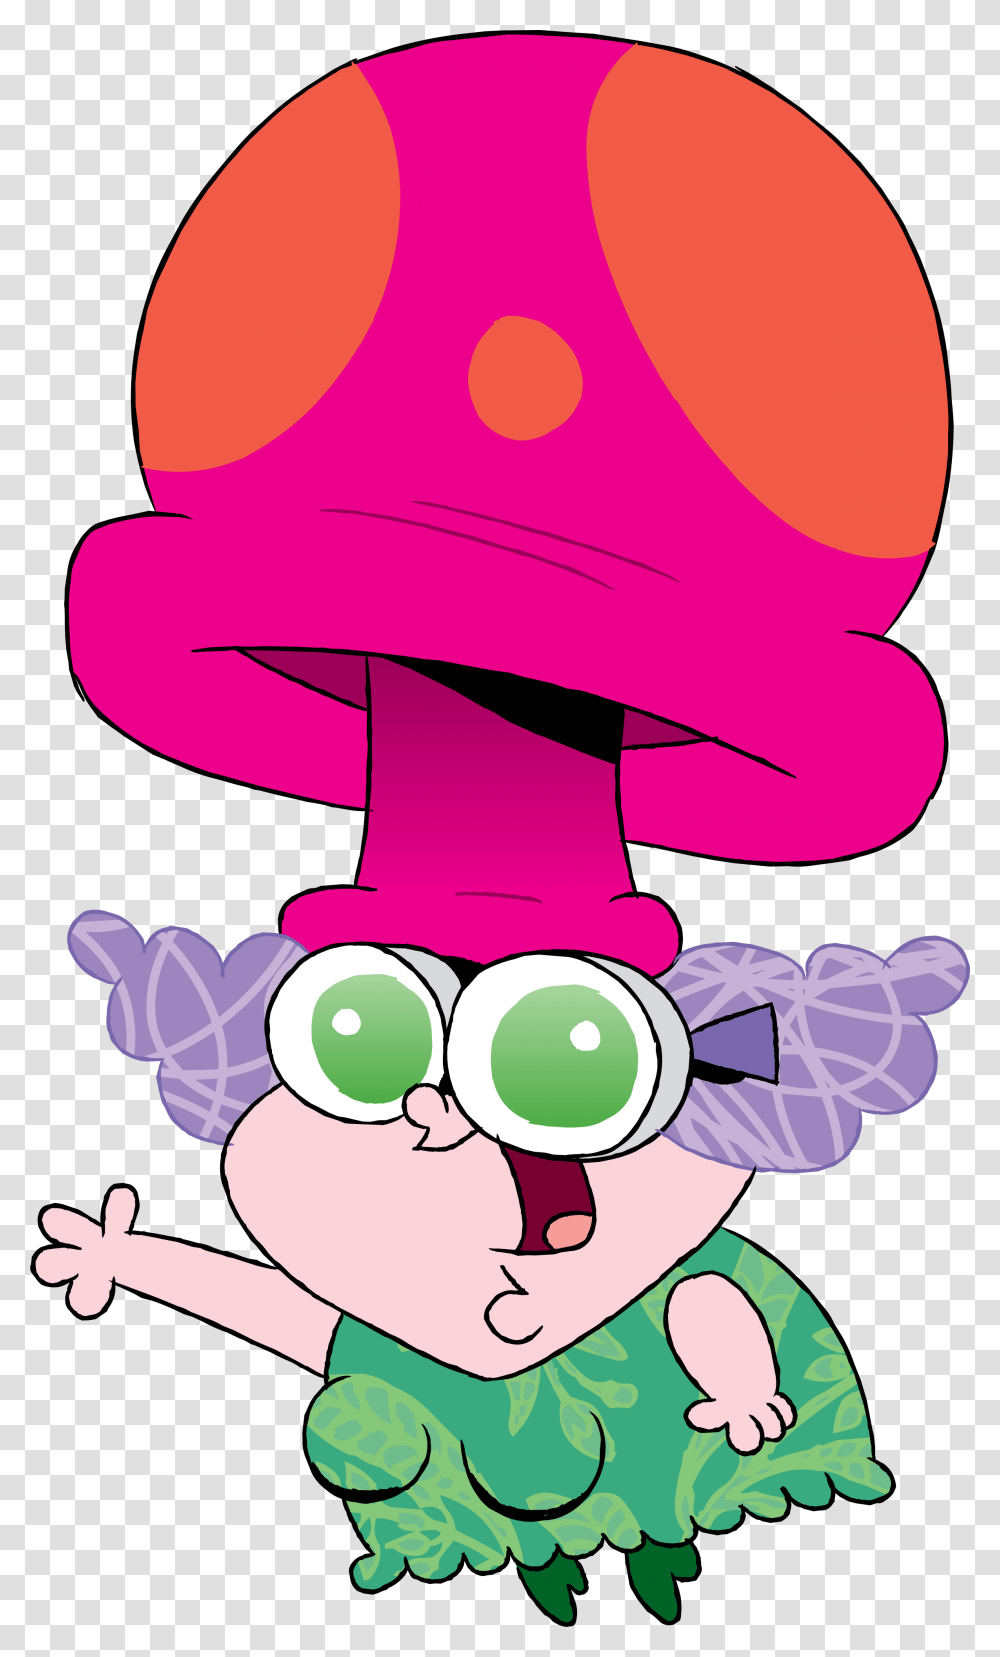 Chowderpedia Chowder Mushroom Lady, Apparel, Hat Transparent Png